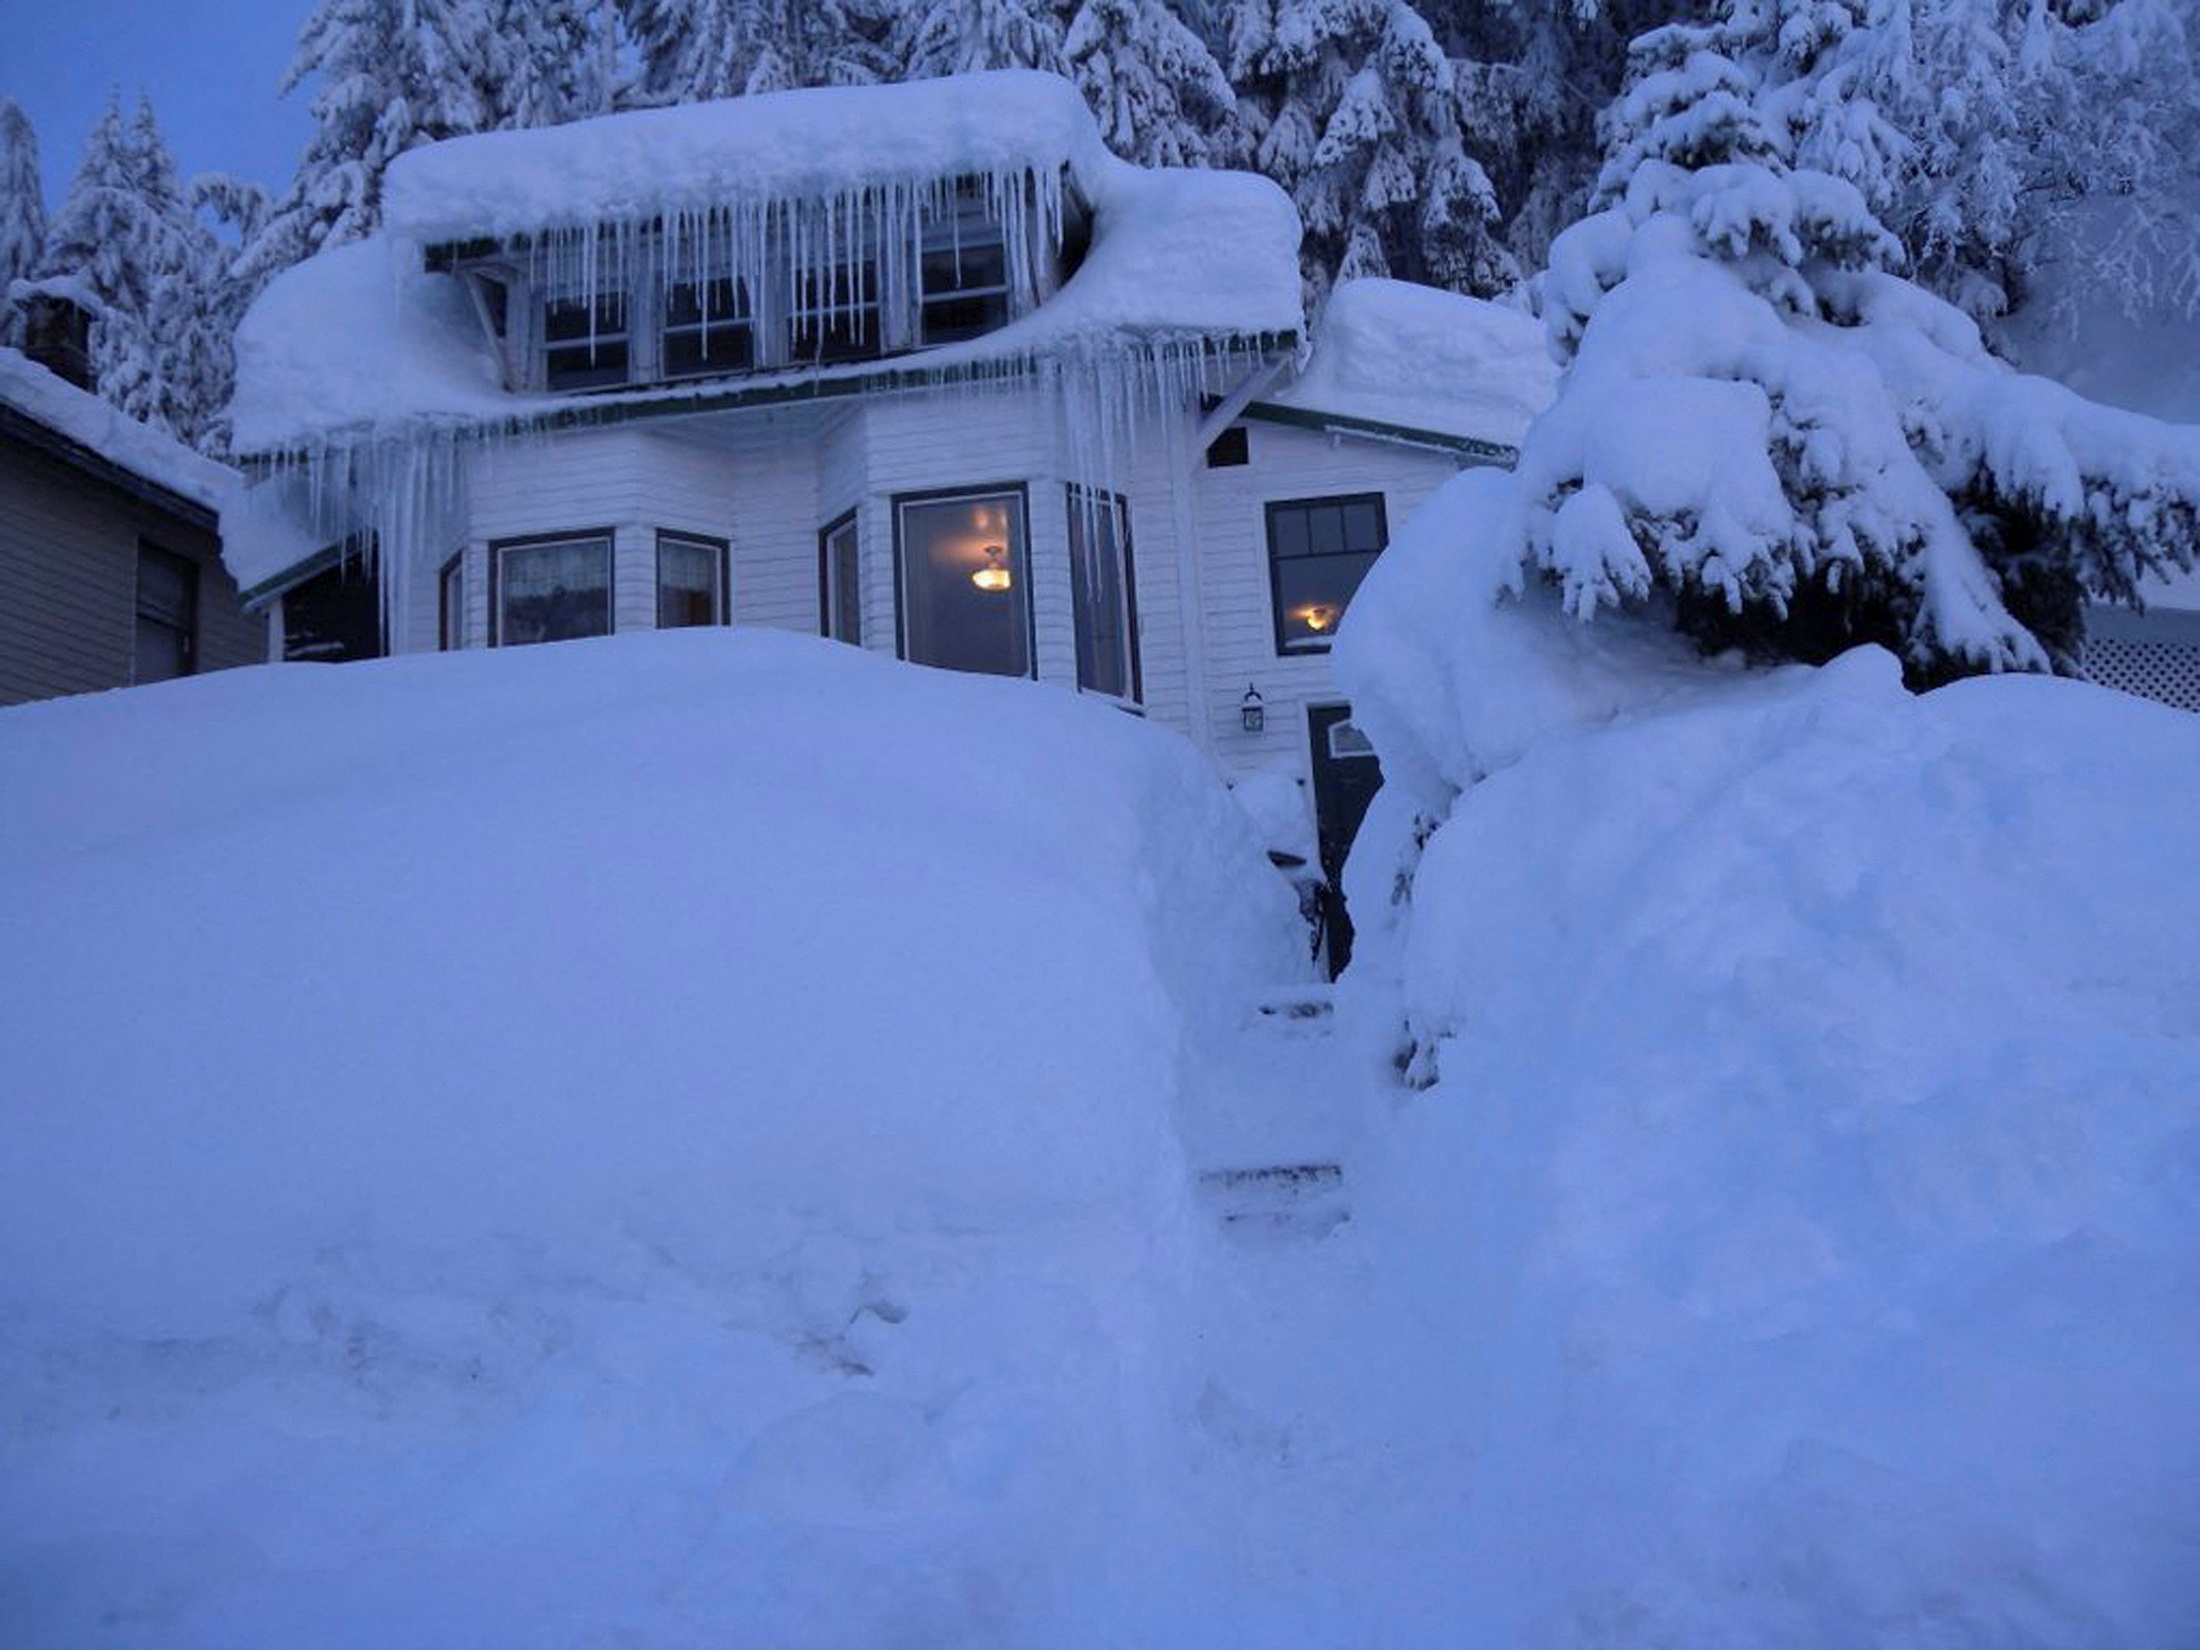 Заваленные снегом дома. Дом занесло снегом. Дом в сугробе. Снежный домик. Аляска зима.